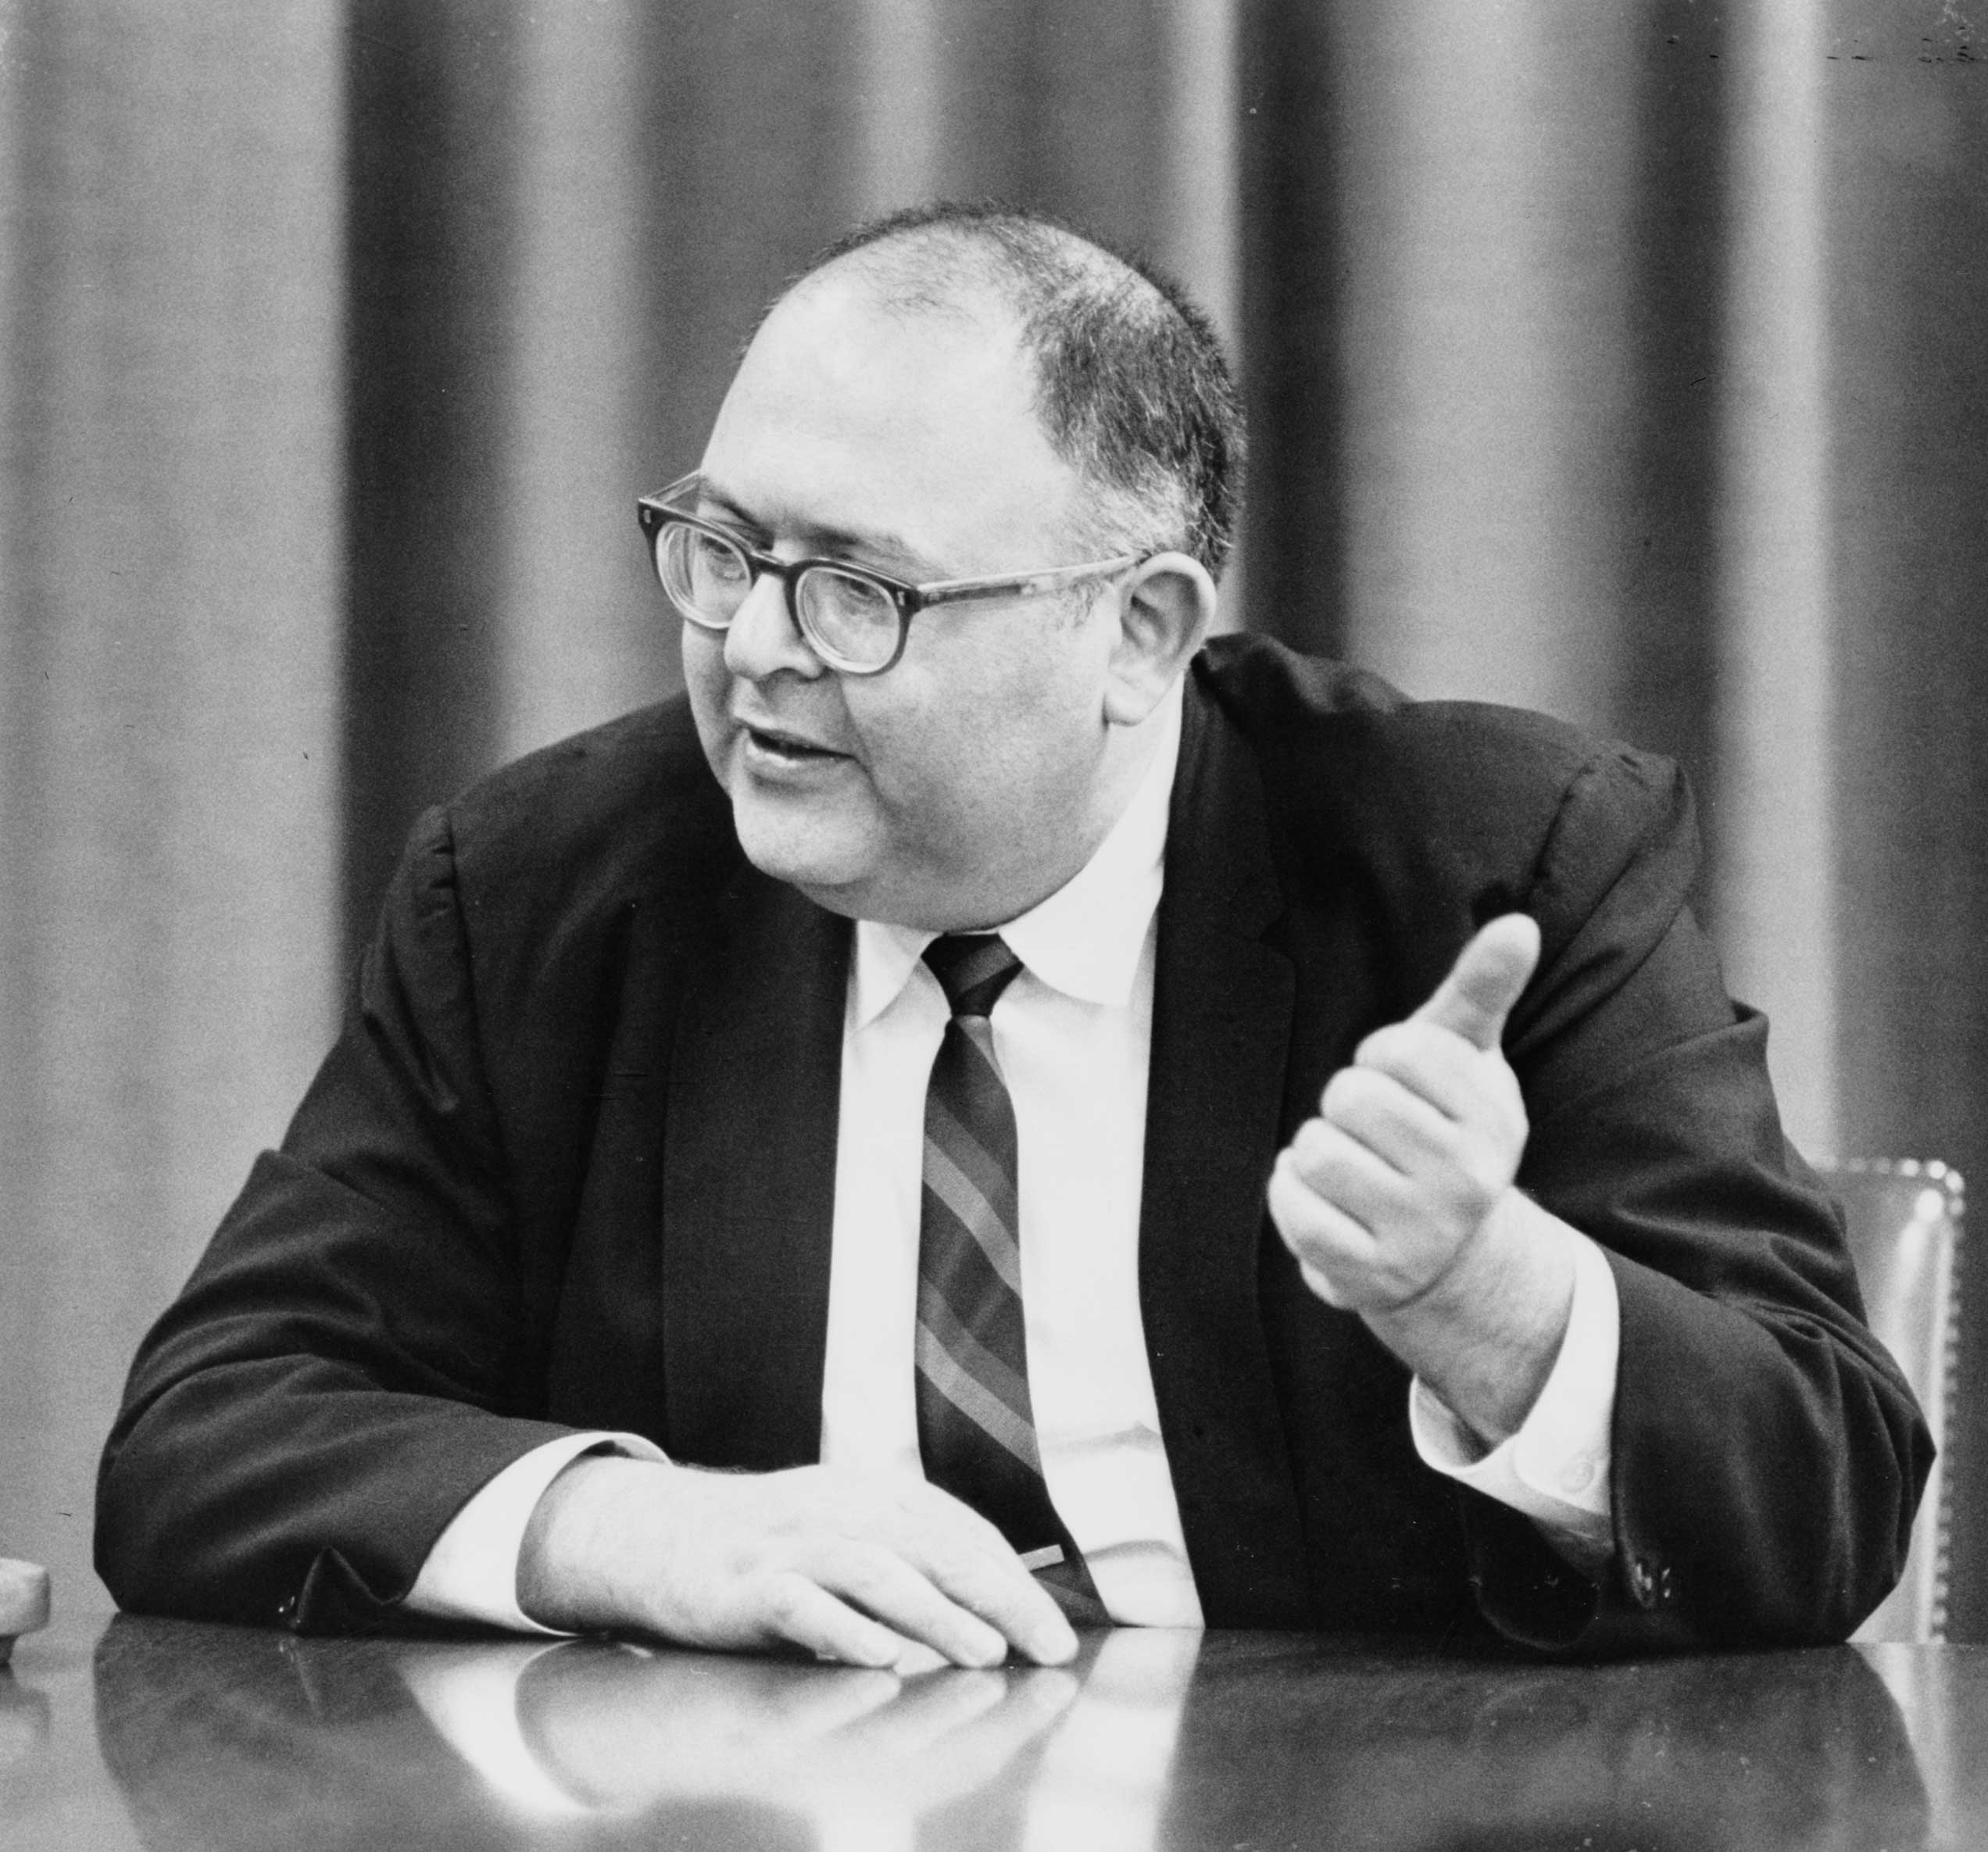 Kahn on May 11, 1965